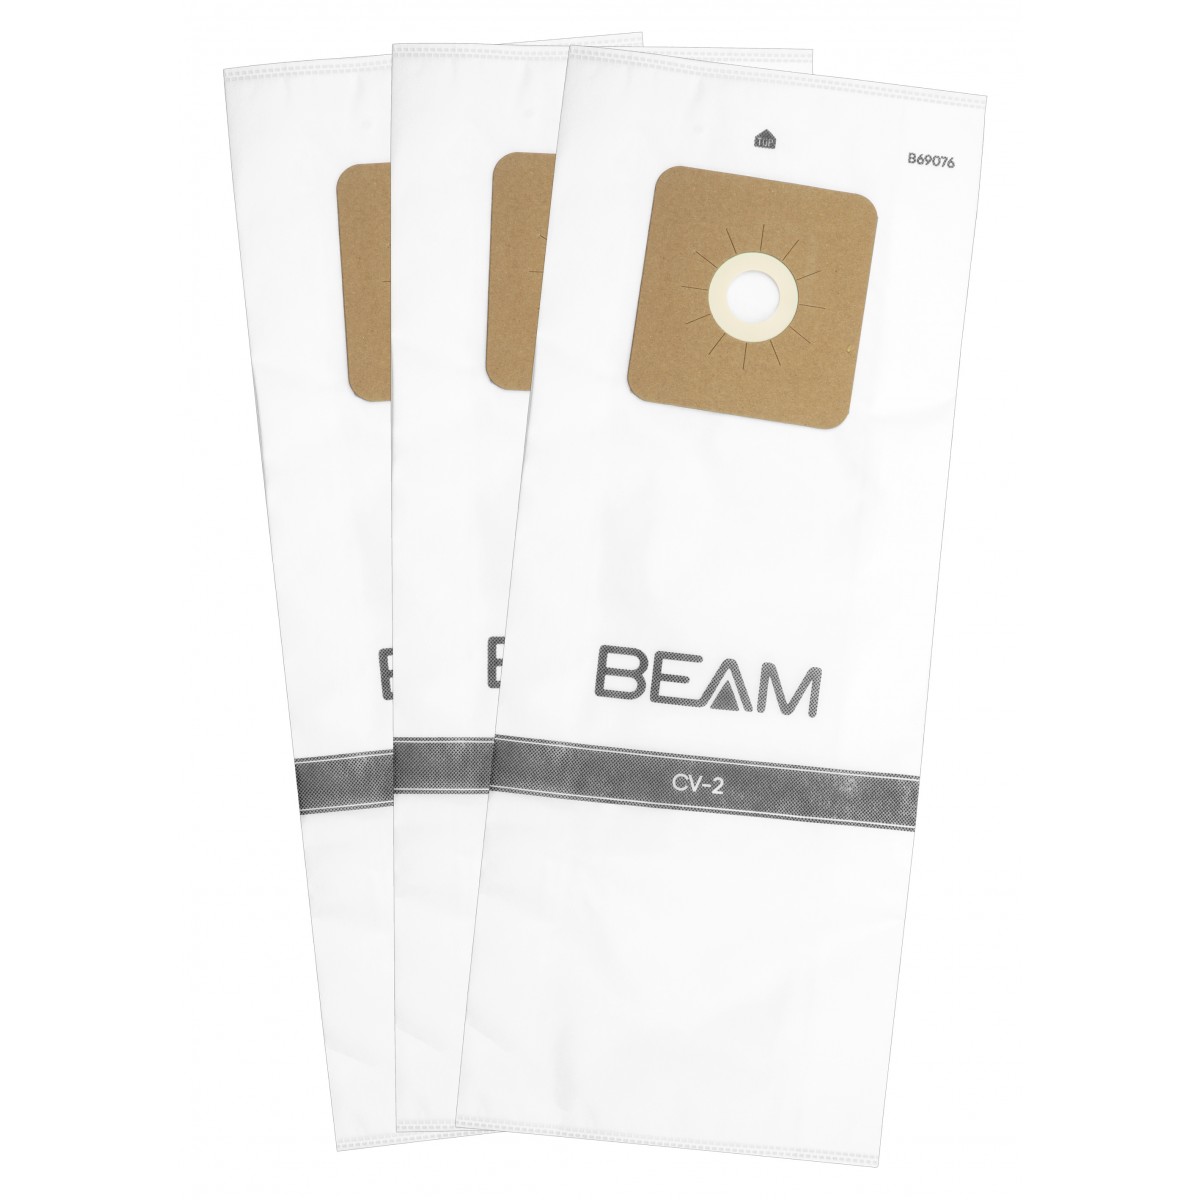 Sac microfiltre HEPA B69057 pour aspirateurs centraux Beam à deux  ouvertures - paquet de 3 sacs